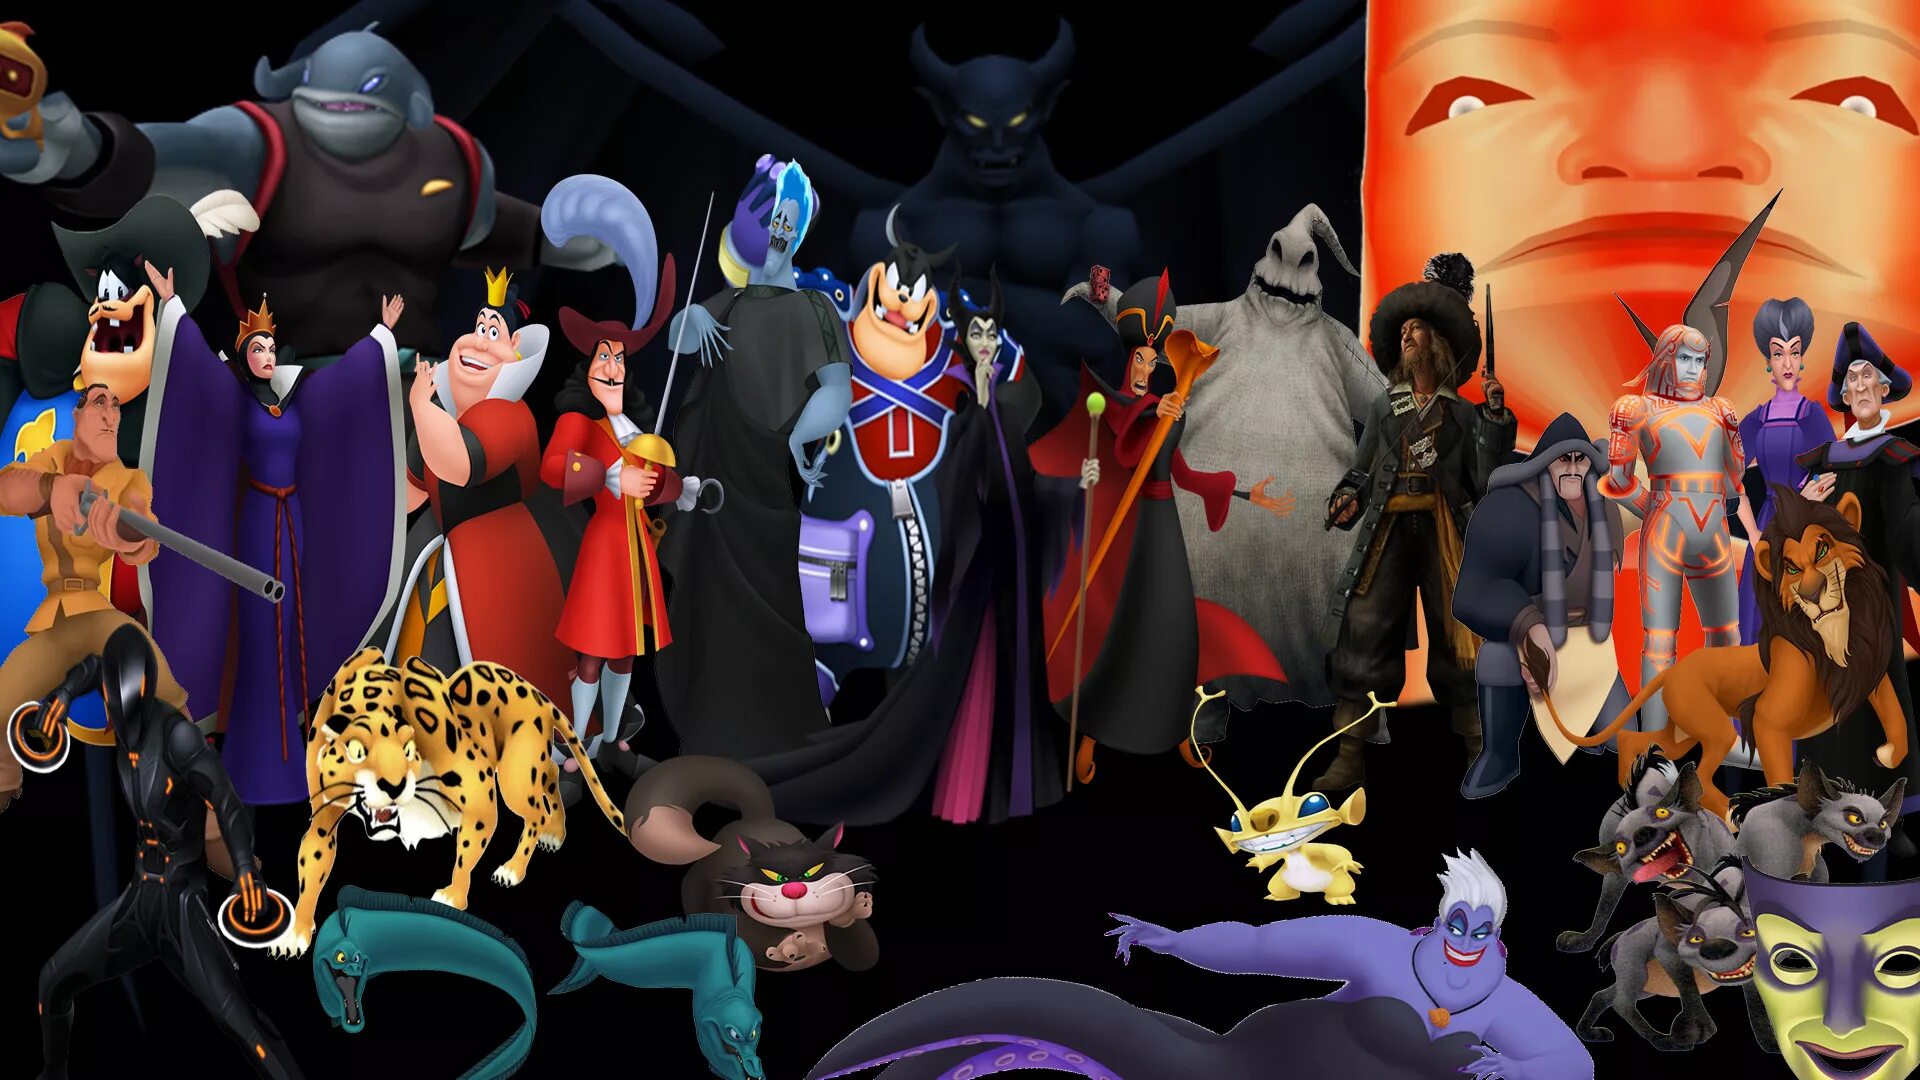 Disney villains. Disney Villains игра. Kingdom Hearts злодей. Disney Kingdom Hearts Villains. Злодейки Диснея.